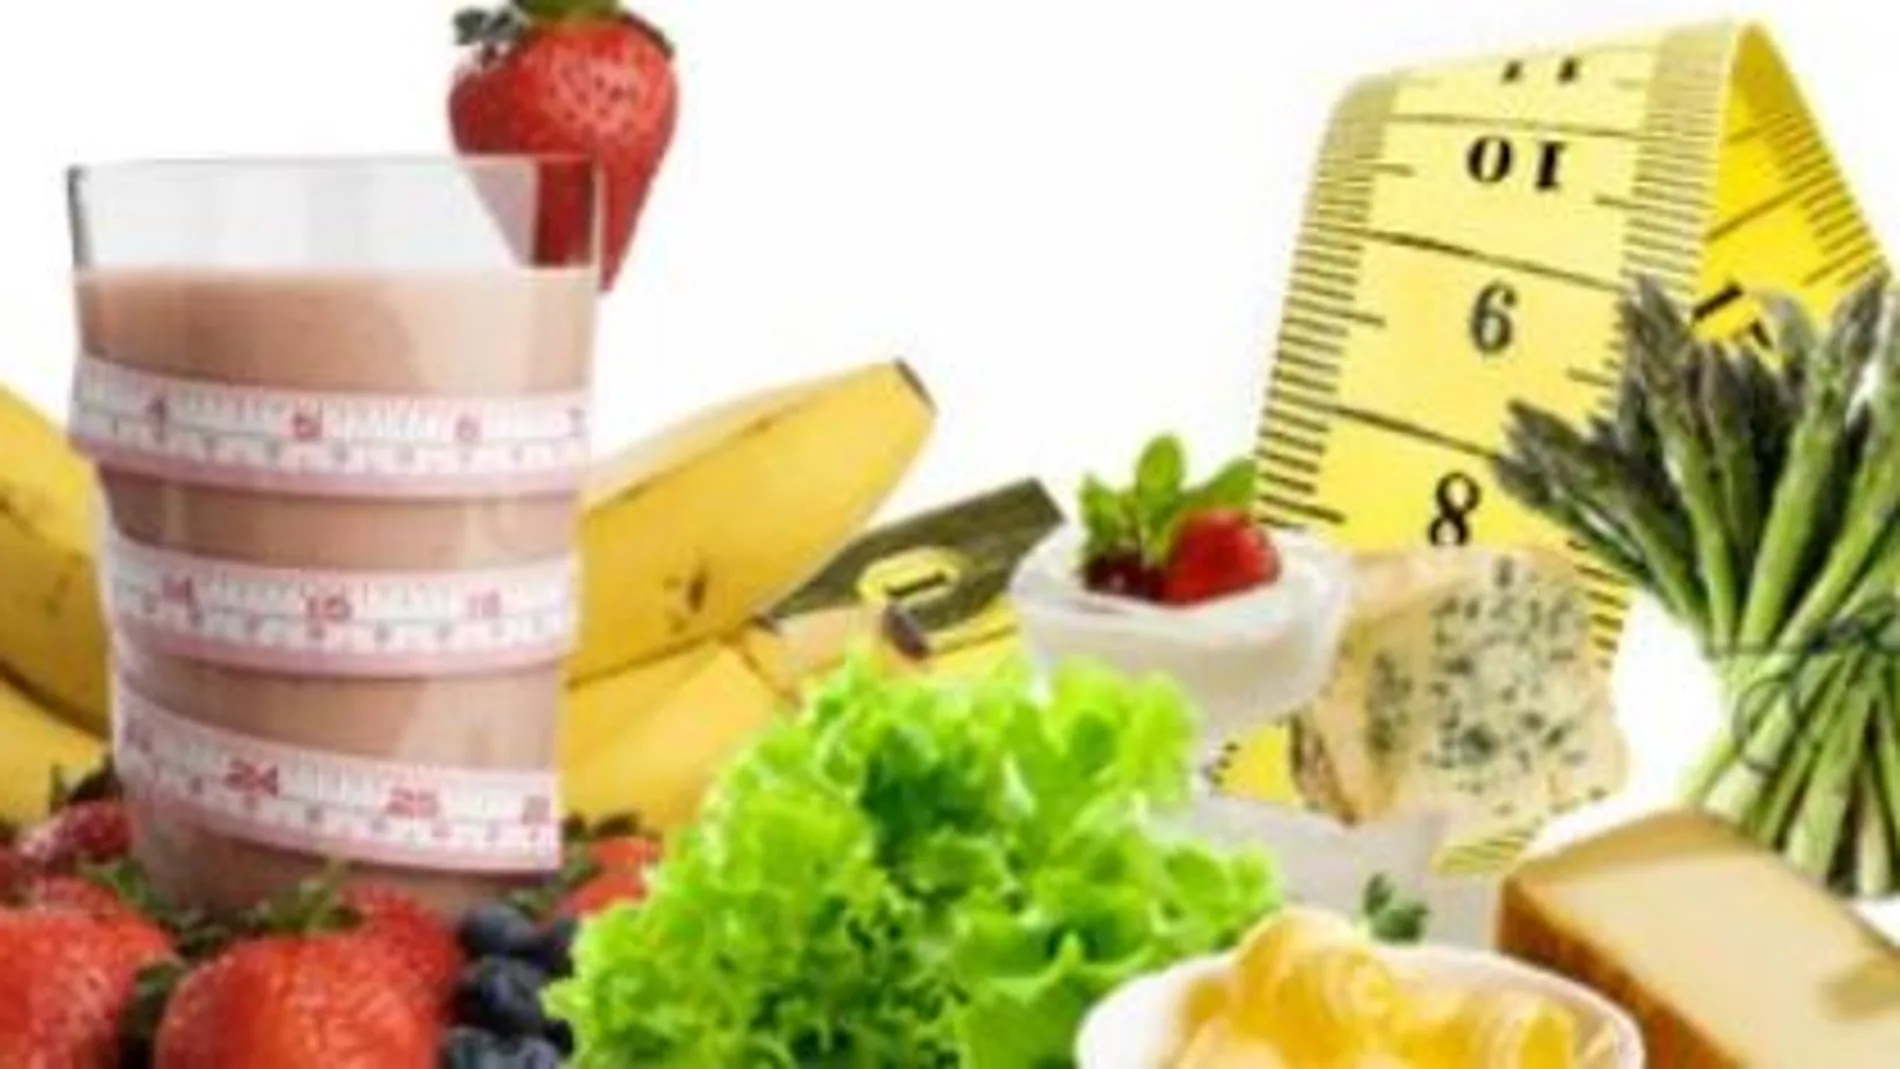 "Operación biquini": Cinco mitos y 5 consejos para perder peso